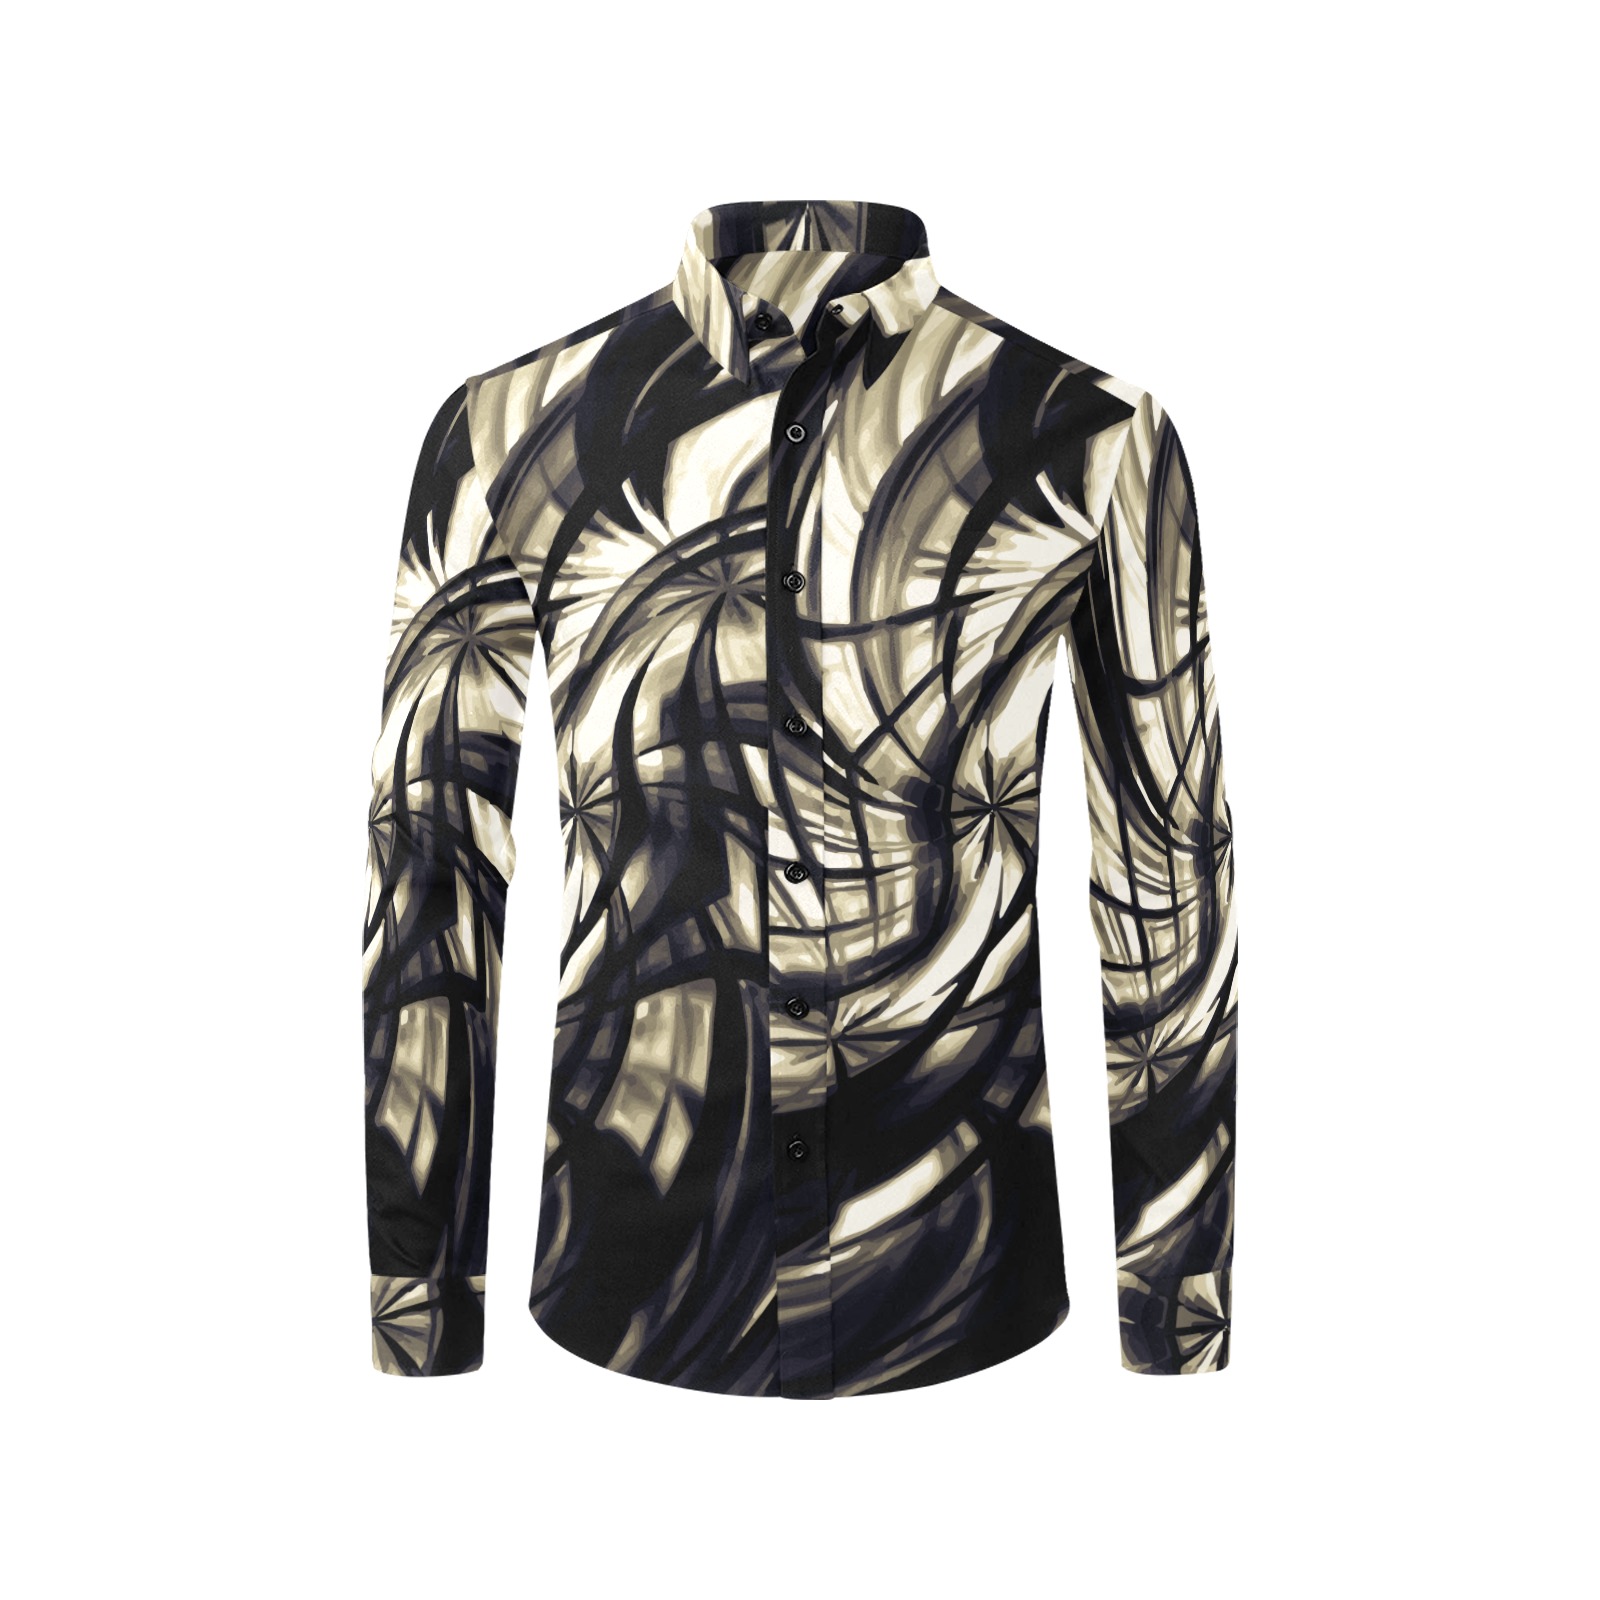 Black Latte - black cream white spiral pattern Men's All Over Print Casual Dress Shirt (Model T61)